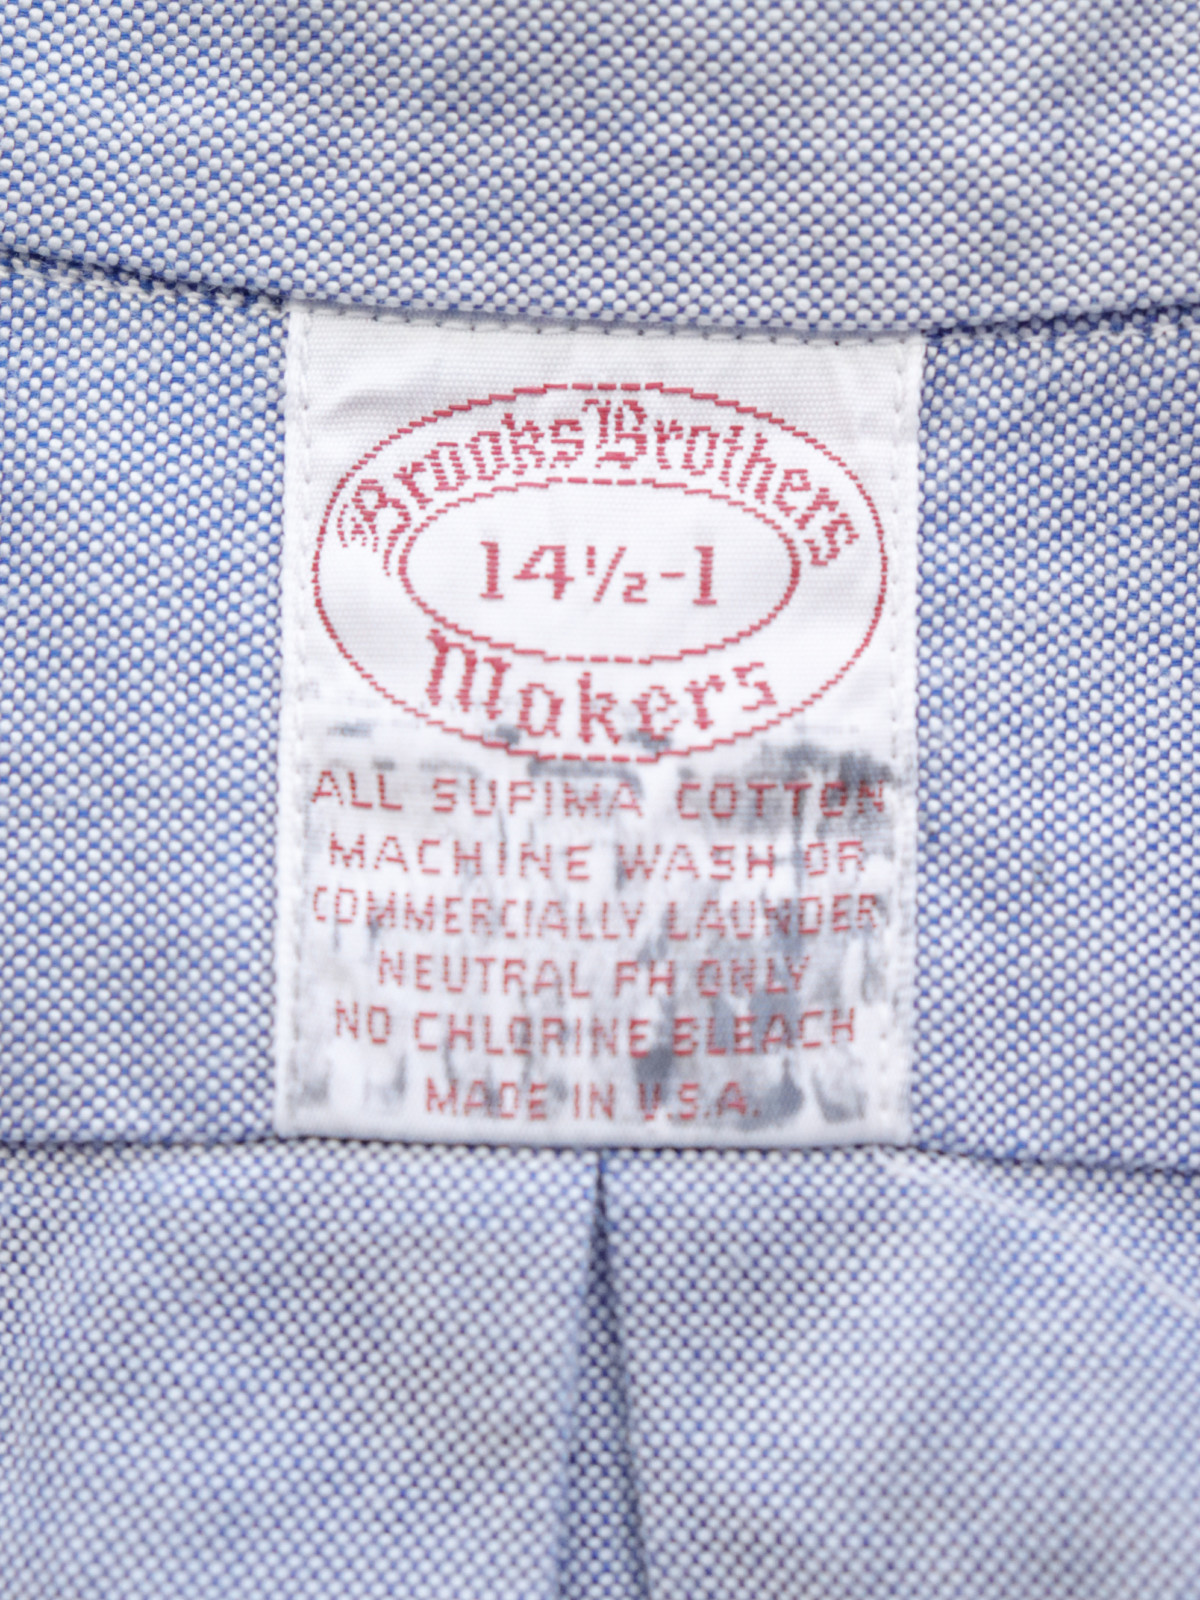 Brooks Brothers,USA,cotton shirts,